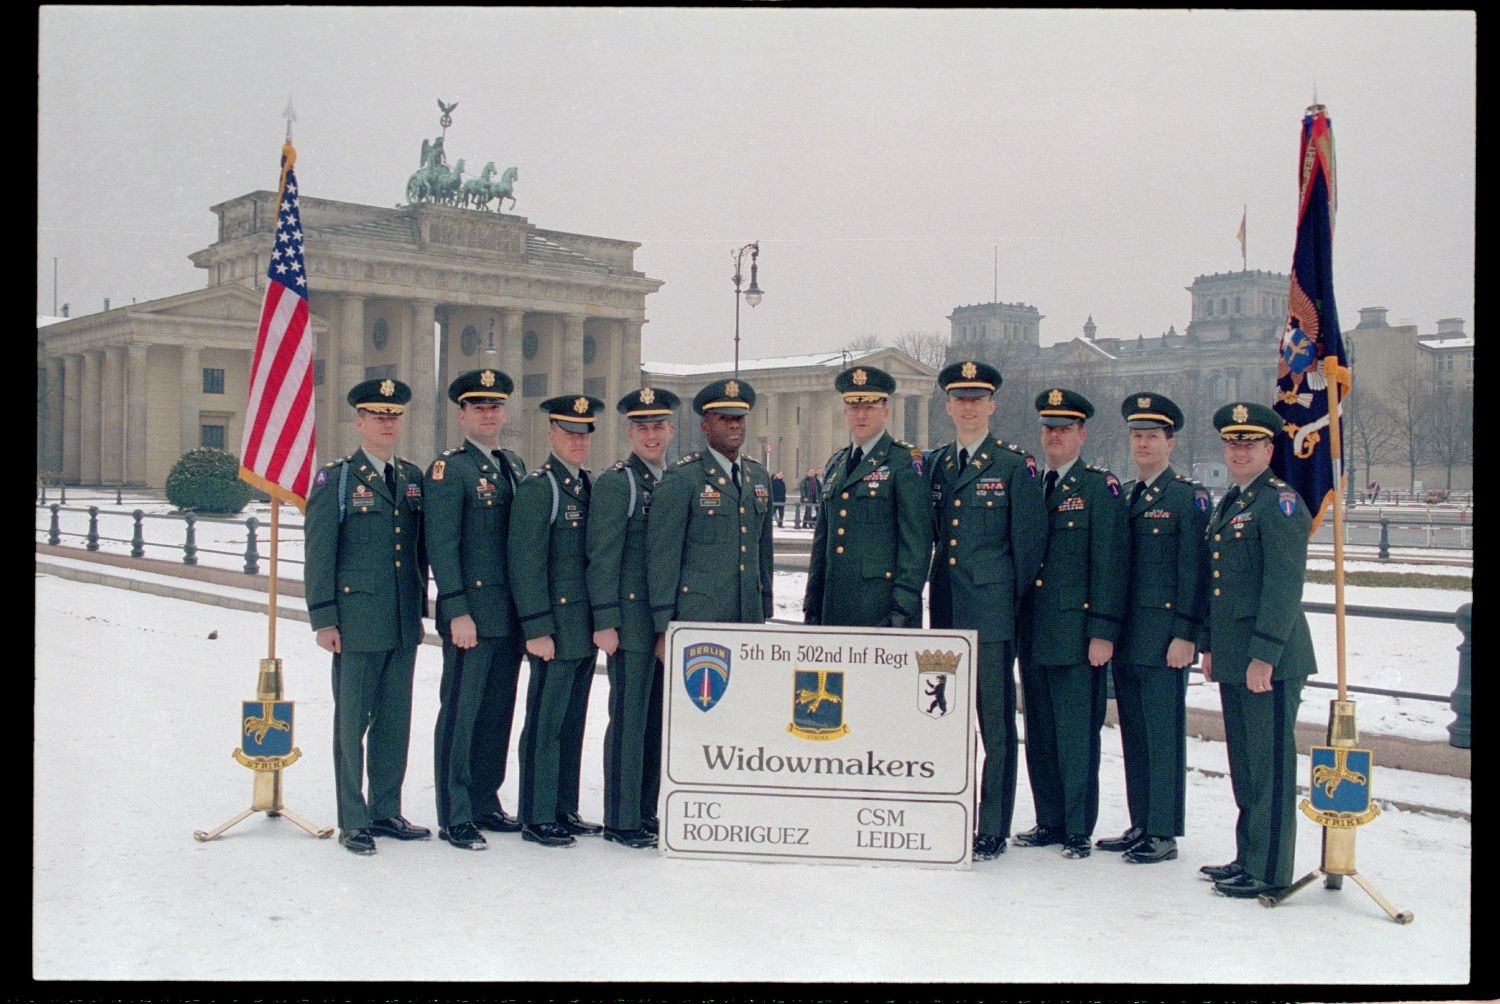 Fotografie: Offiziere des 5th Battalion, 502nd Infantry Regiment der U.S. Army Berlin vor dem Brandenburger Tor in Berlin-Mitte